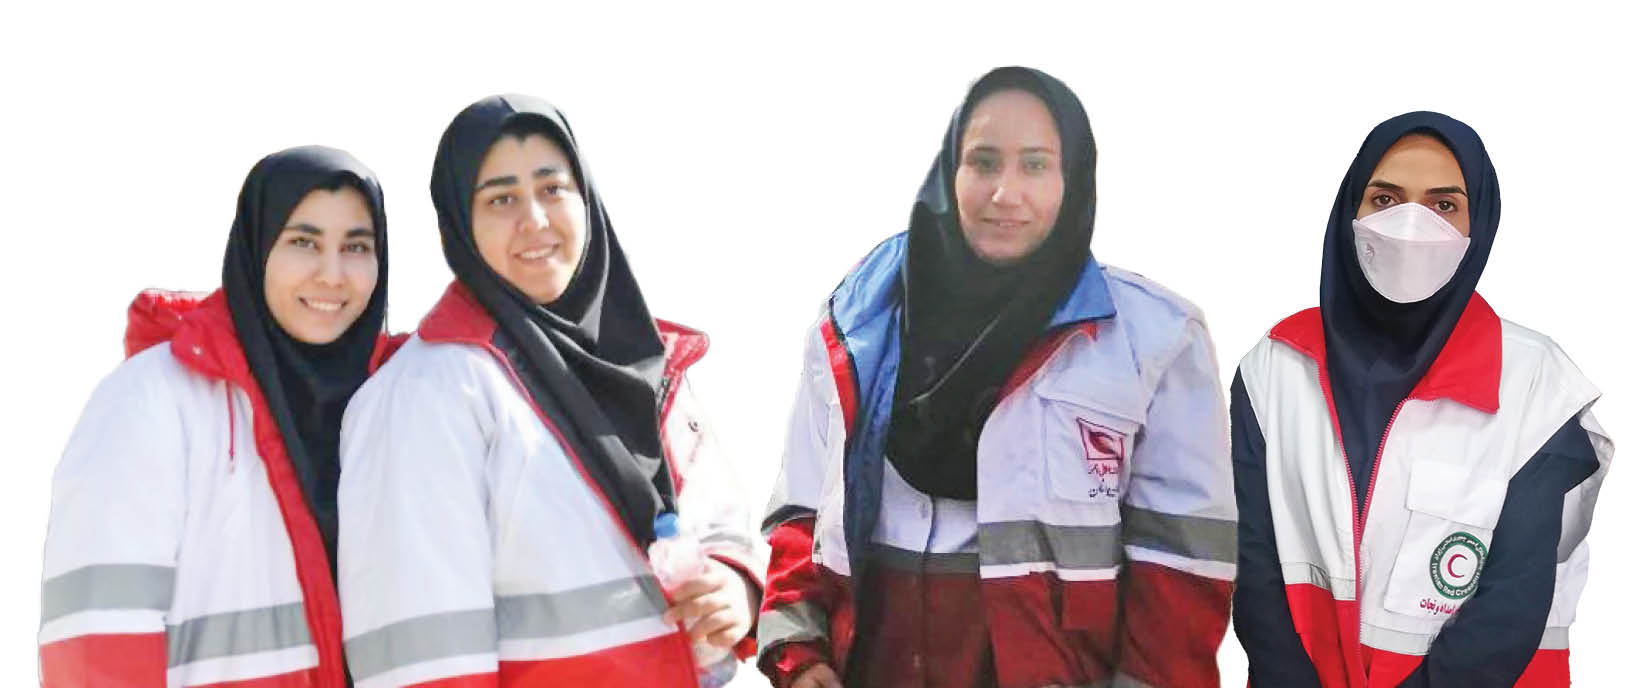 3روایت از قهرمانان ناشناس حادثه تروریستی کرمان